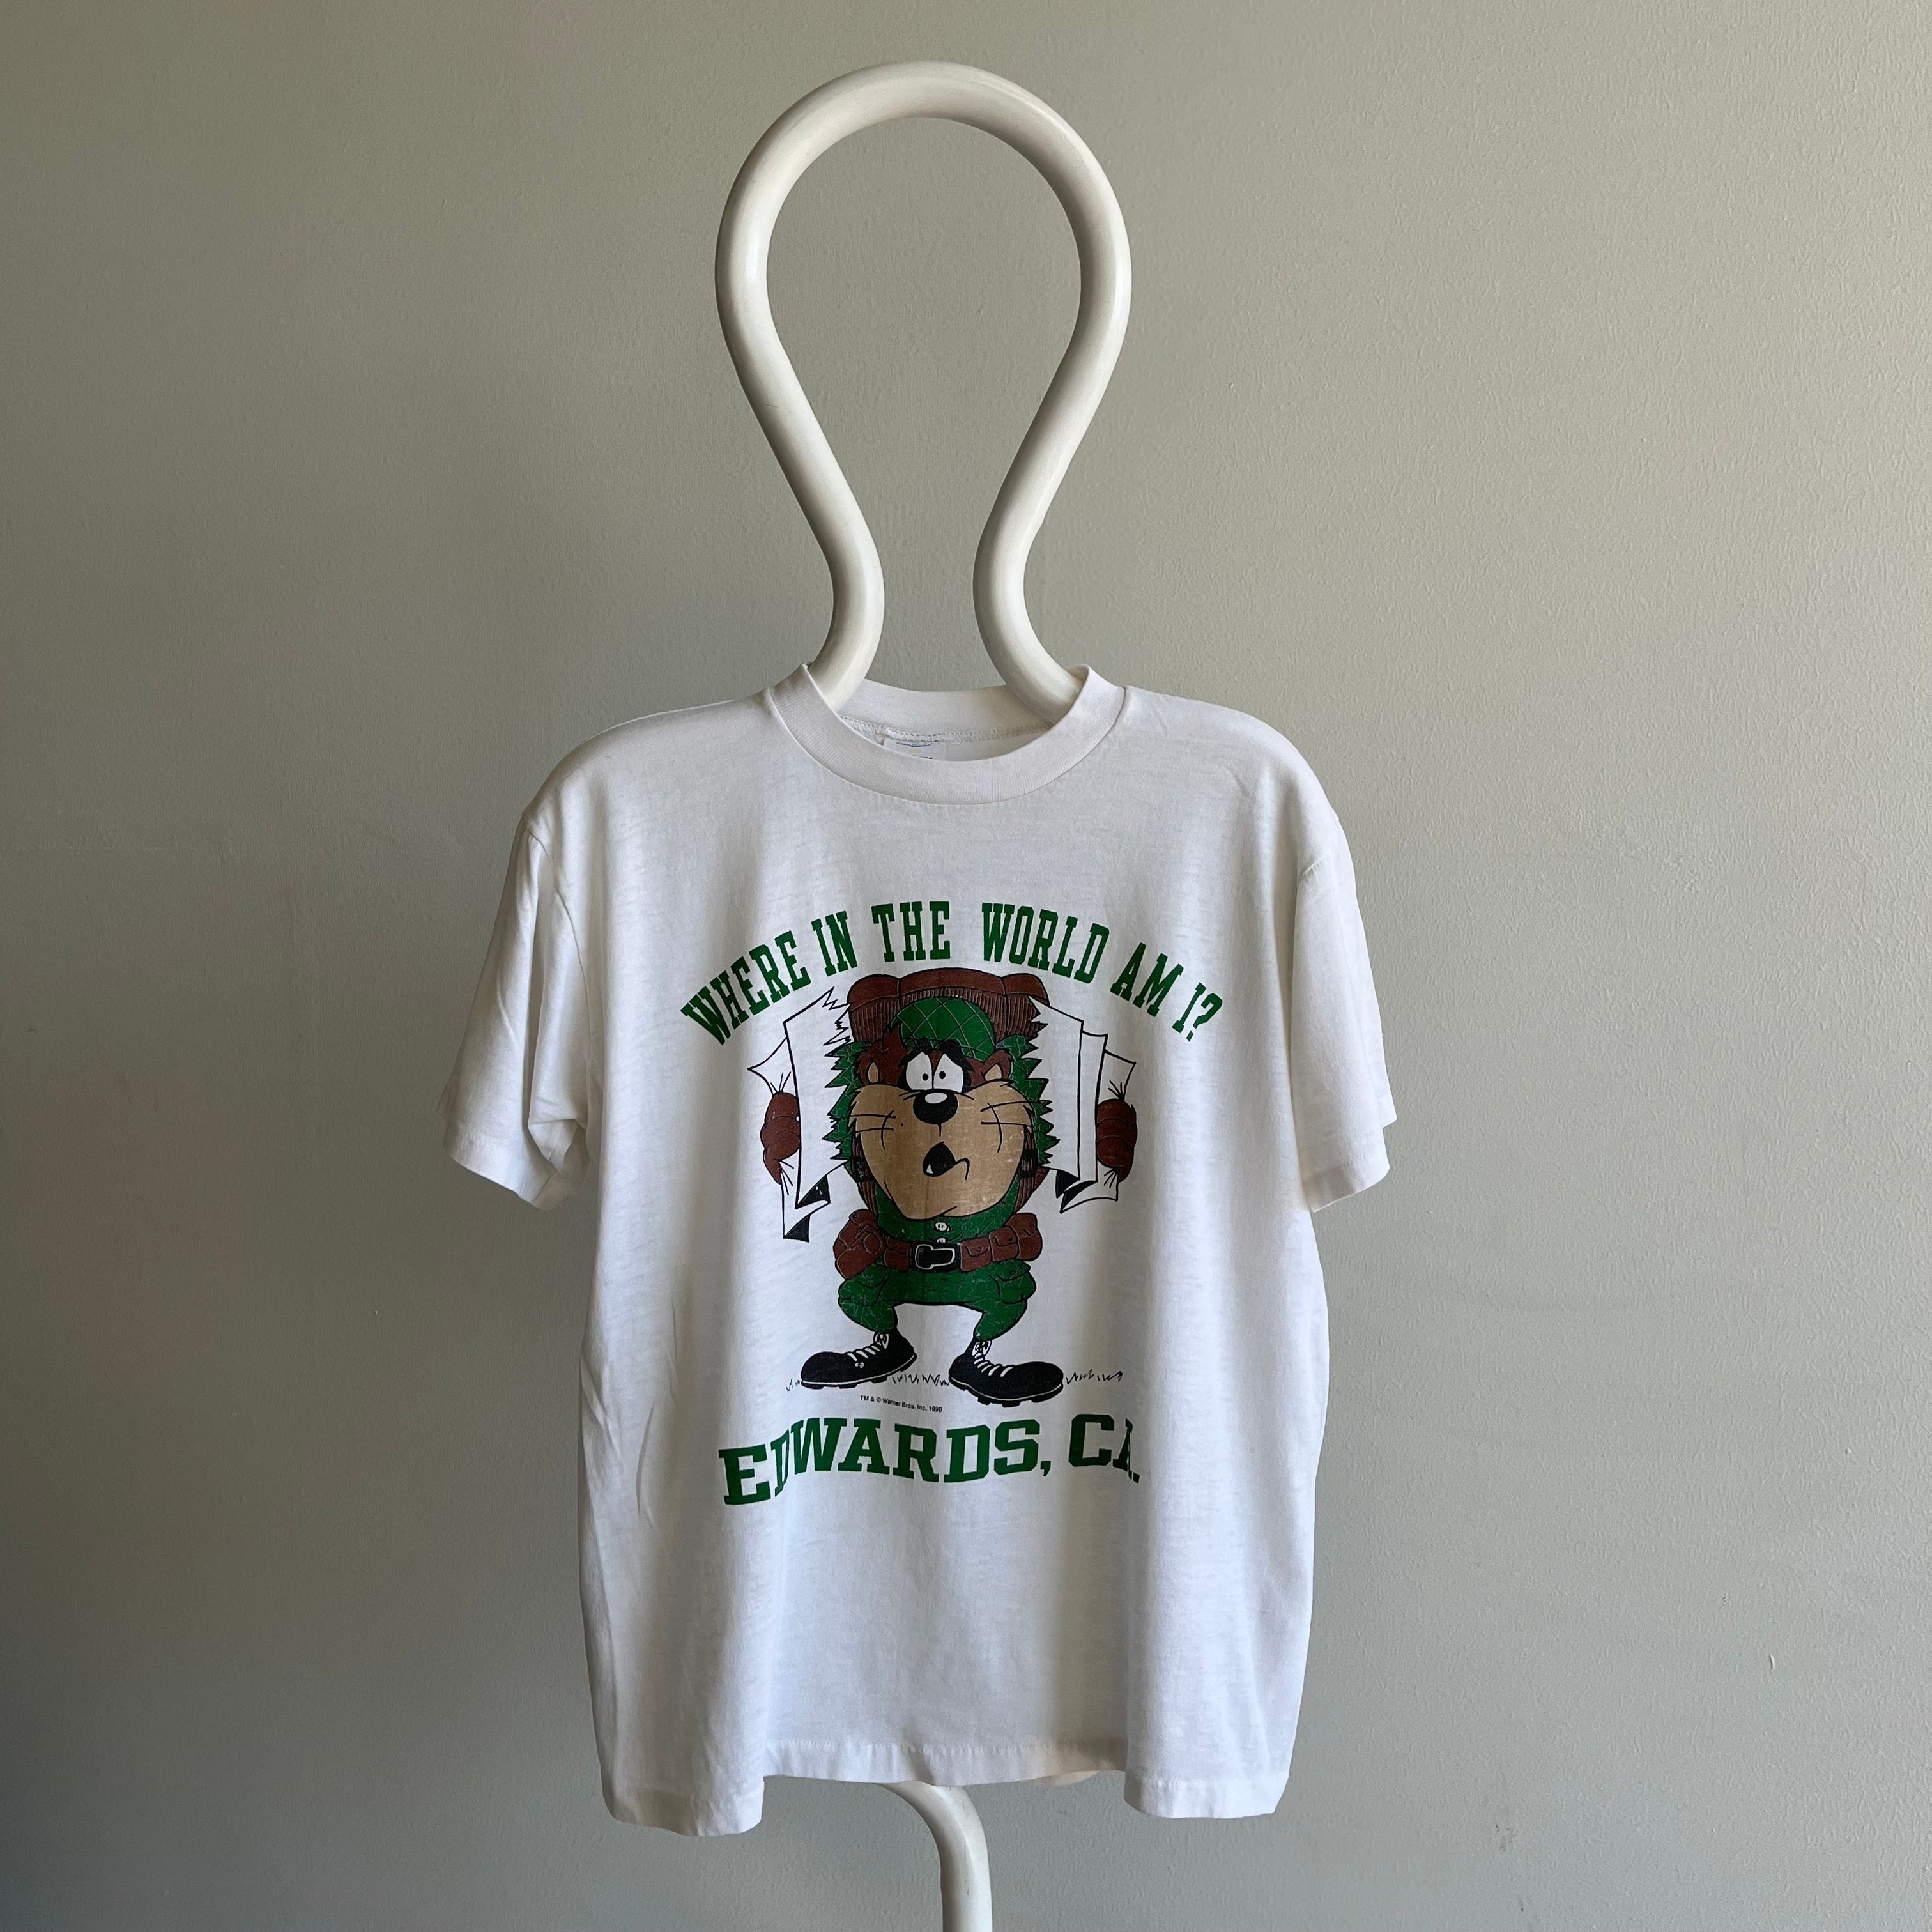 1990 Taz - Où suis-je dans le monde ? - Edwards, Californie - T-shirt